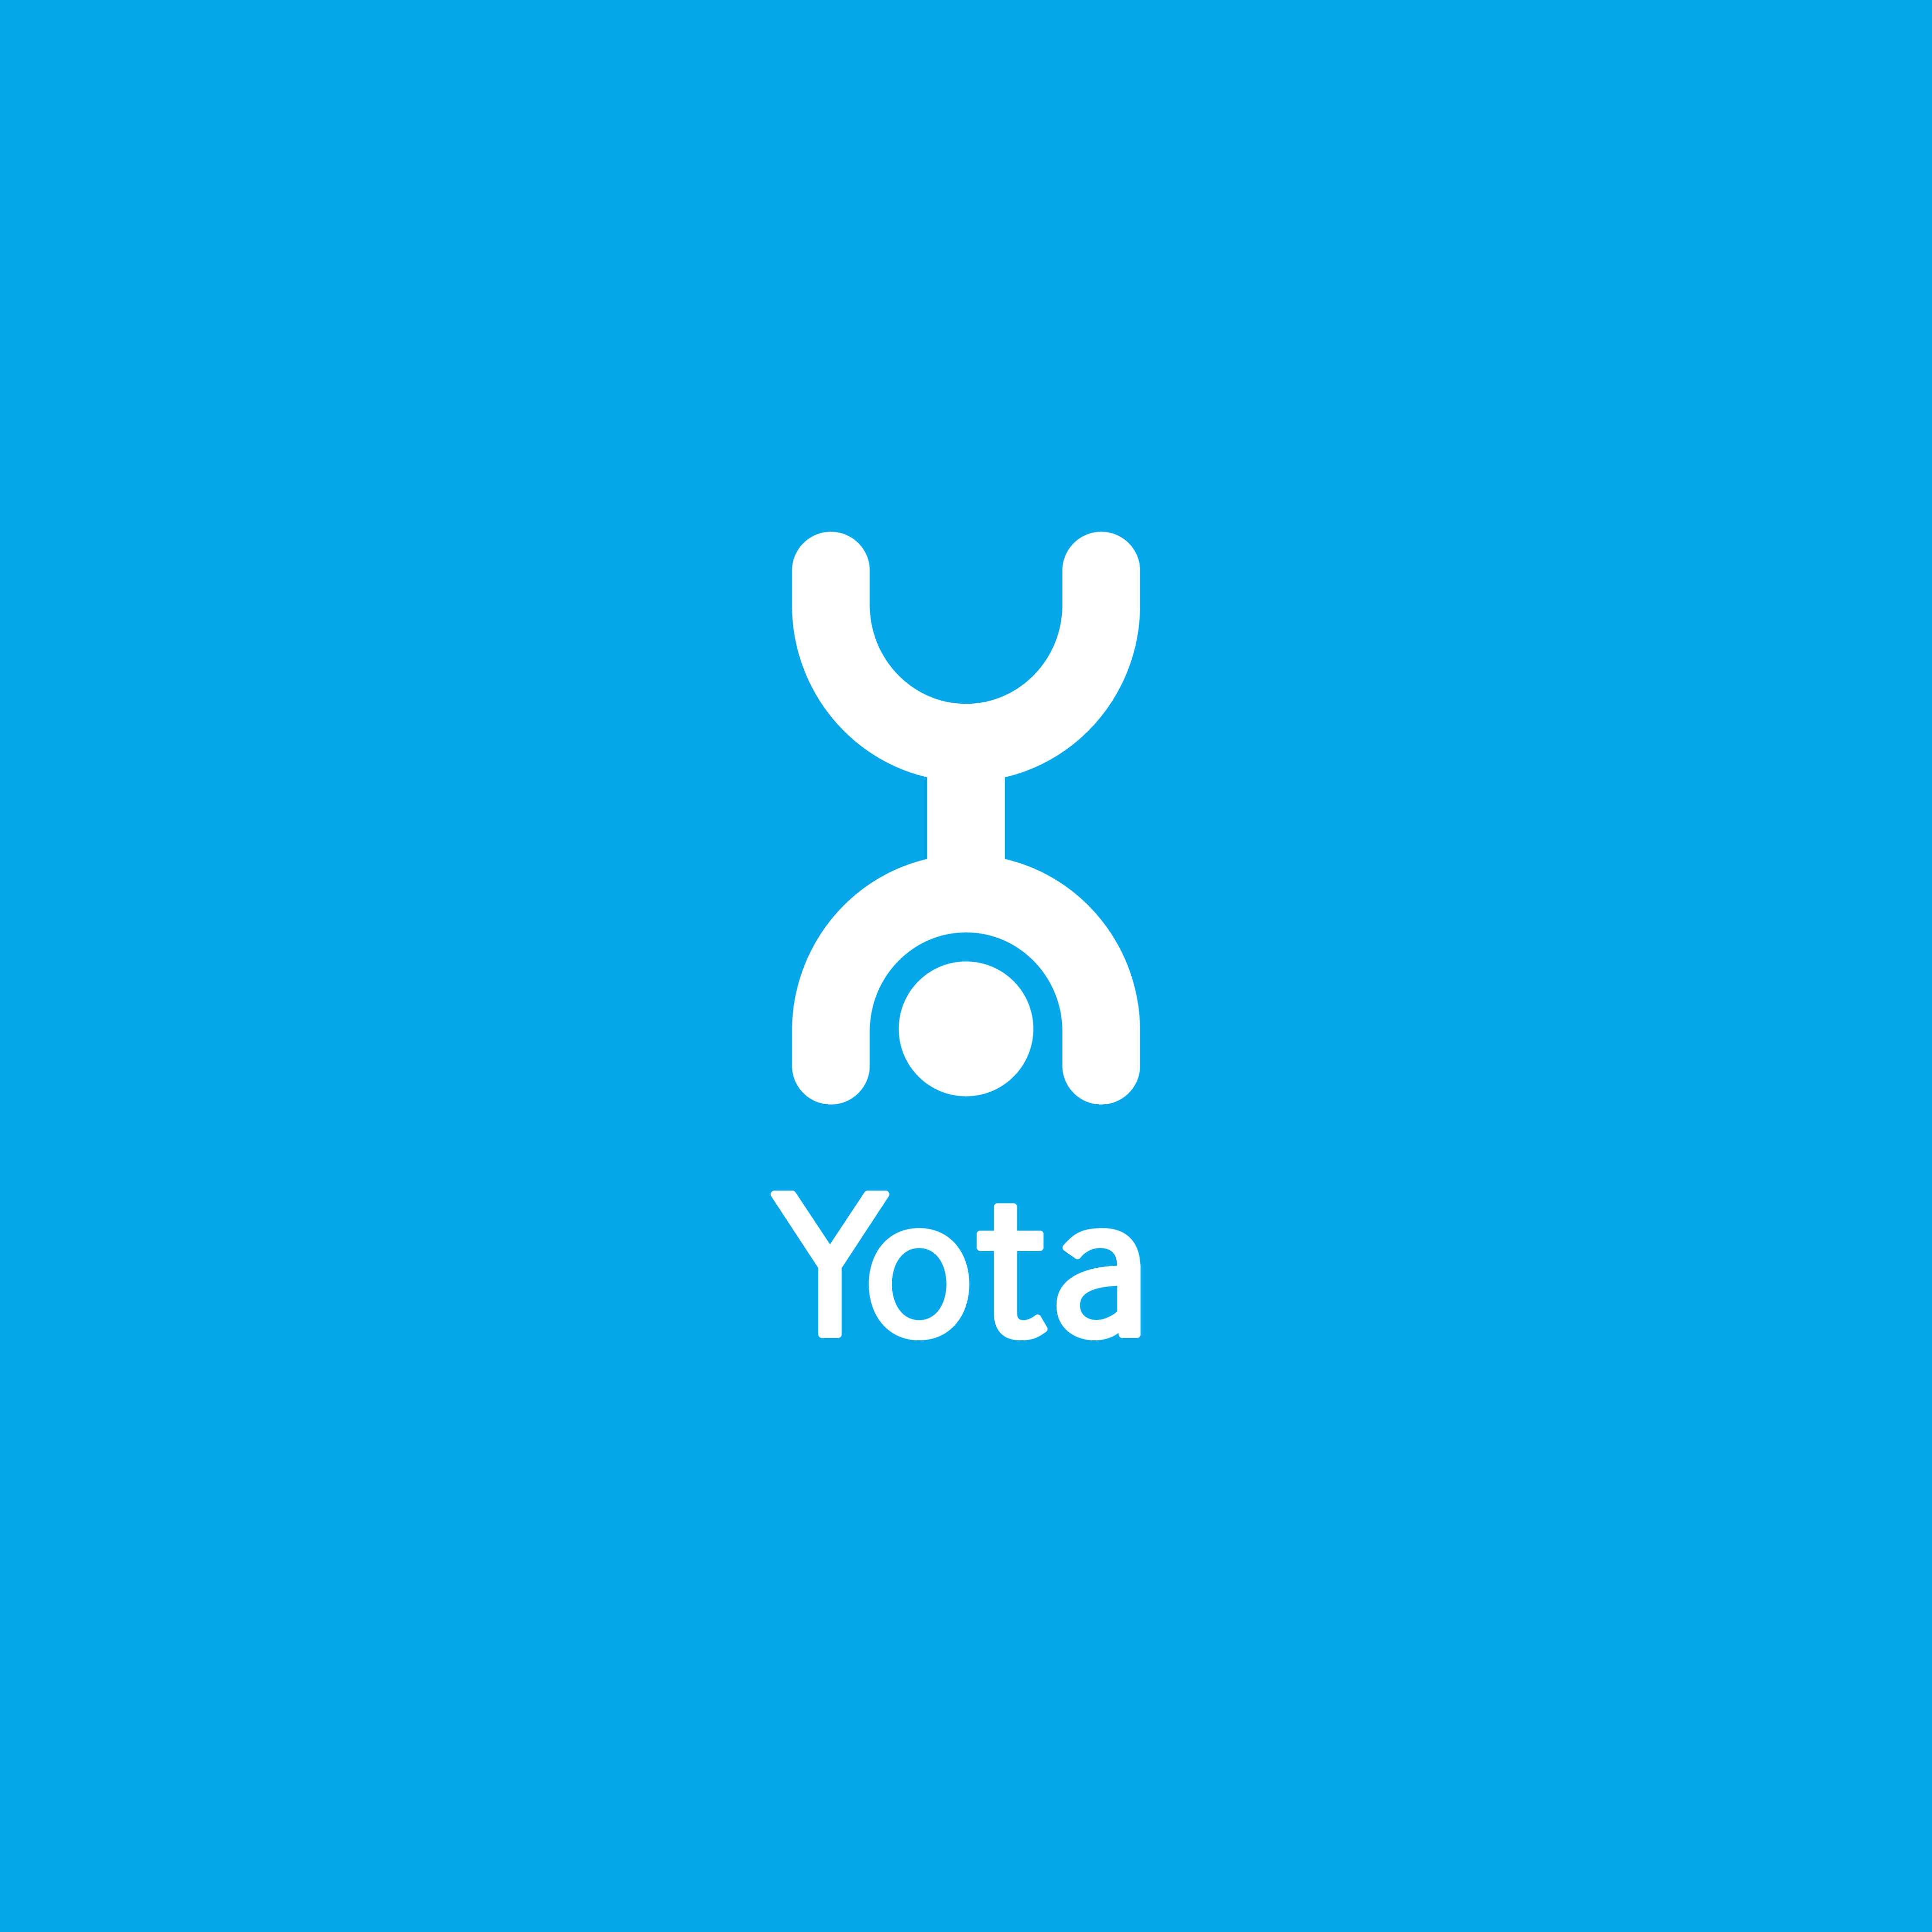 ITGLOBAL.COM has announced the partnership with Central American telecom provider Yota de Nicaragua